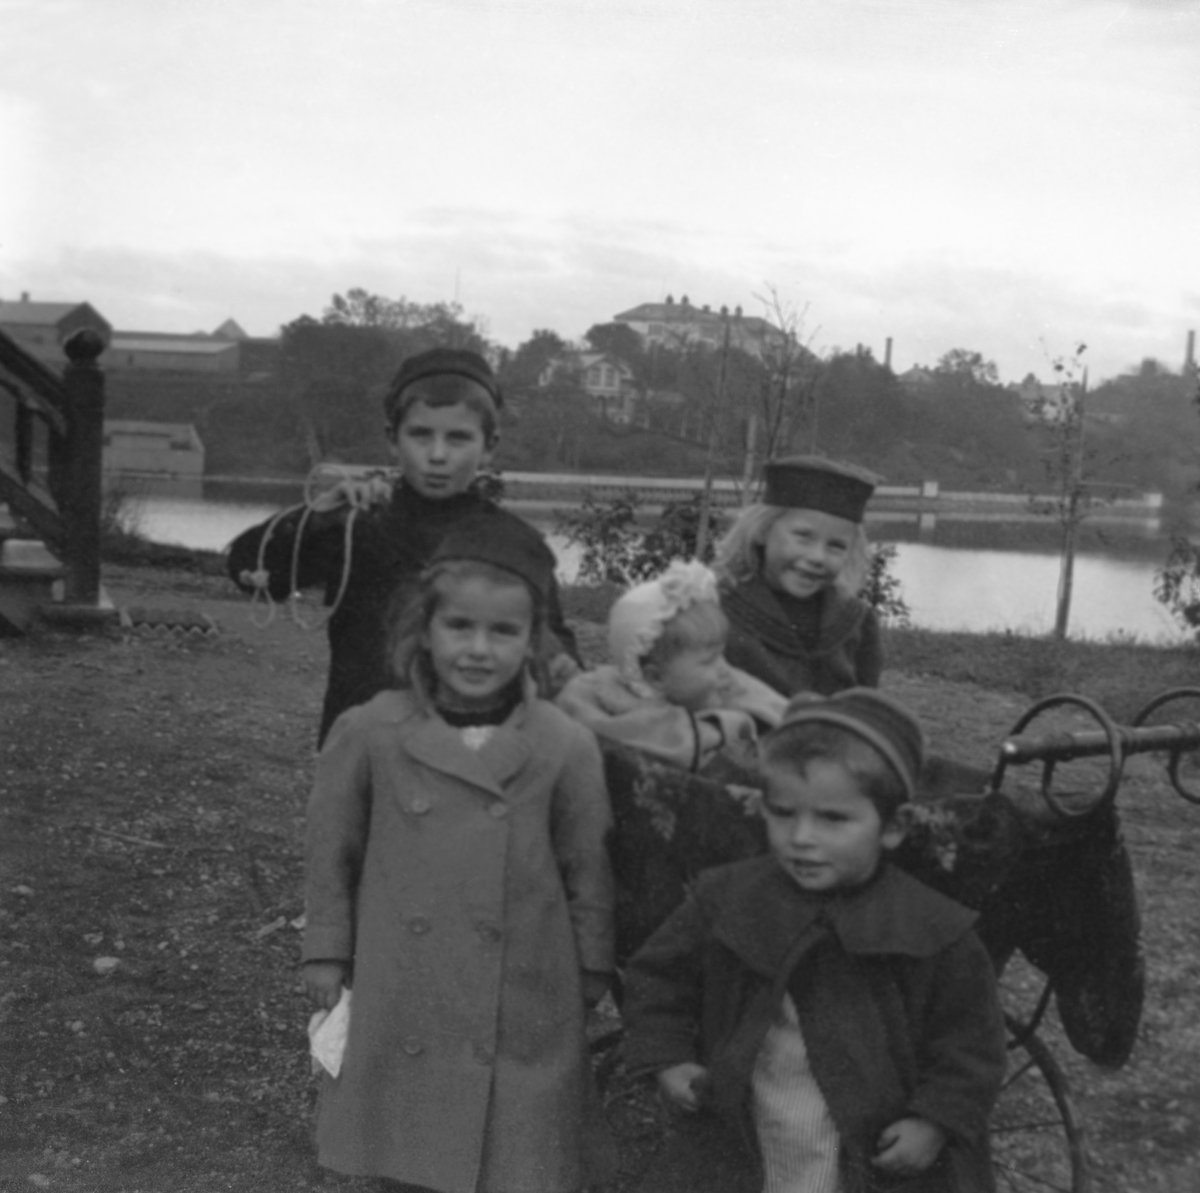 Fritjof, Guri, Nanna i barnevogn, Sofie og Thorleif Arentz ved kjøkkeninngangen til hjemmet Elverhøy i Trondheim. Nidelven i bakgrunnen. Fotografert 1902.